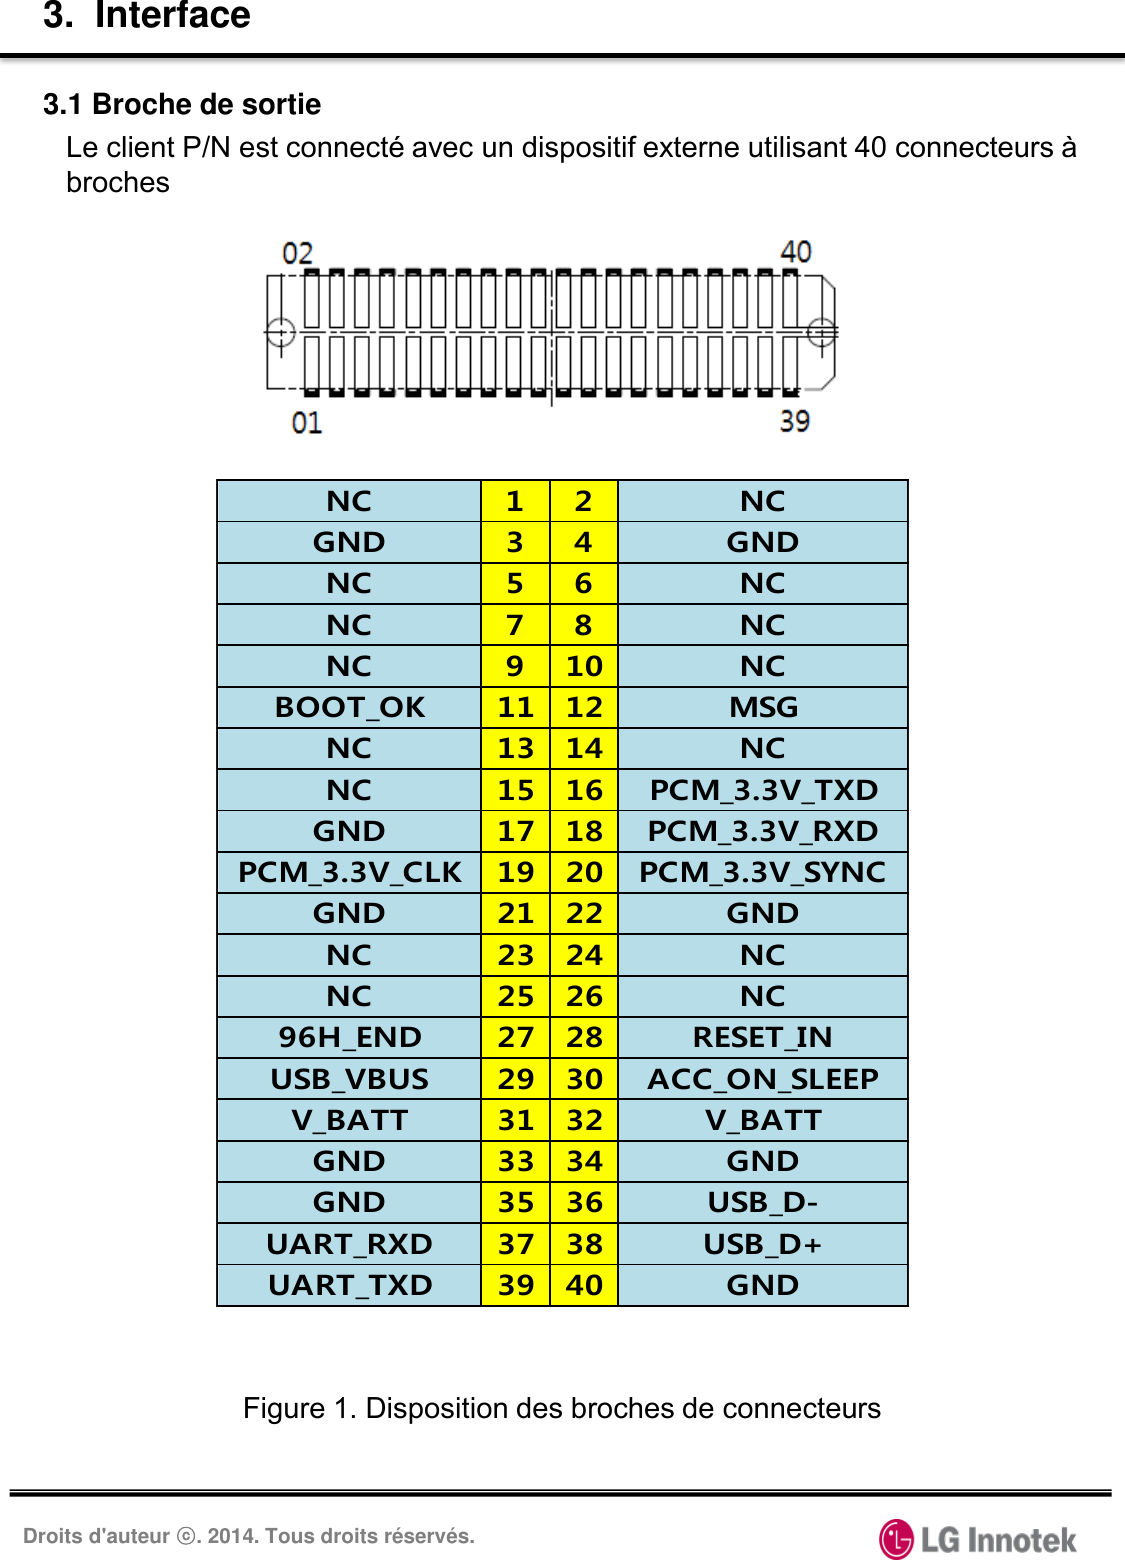 Droits d&apos;auteur ⓒ. 2014. Tous droits réservés. 3.  Interface Le client P/N est connecté avec un dispositif externe utilisant 40 connecteurs à broches 3.1 Broche de sortie Figure 1. Disposition des broches de connecteurs NC 1 2 NCGND 3 4 GNDNC 5 6 NCNC 7 8 NCNC 910 NCBOOT_OK 11 12 MSGNC 13 14 NCNC 15 16 PCM_3.3V_TXDGND 17 18 PCM_3.3V_RXDPCM_3.3V_CLK 19 20 PCM_3.3V_SYNCGND 21 22 GNDNC 23 24 NCNC 25 26 NC96H_END 27 28 RESET_INUSB_VBUS 29 30 ACC_ON_SLEEPV_BATT 31 32 V_BATTGND 33 34 GNDGND 35 36 USB_D-UART_RXD 37 38 USB_D+UART_TXD 39 40 GND